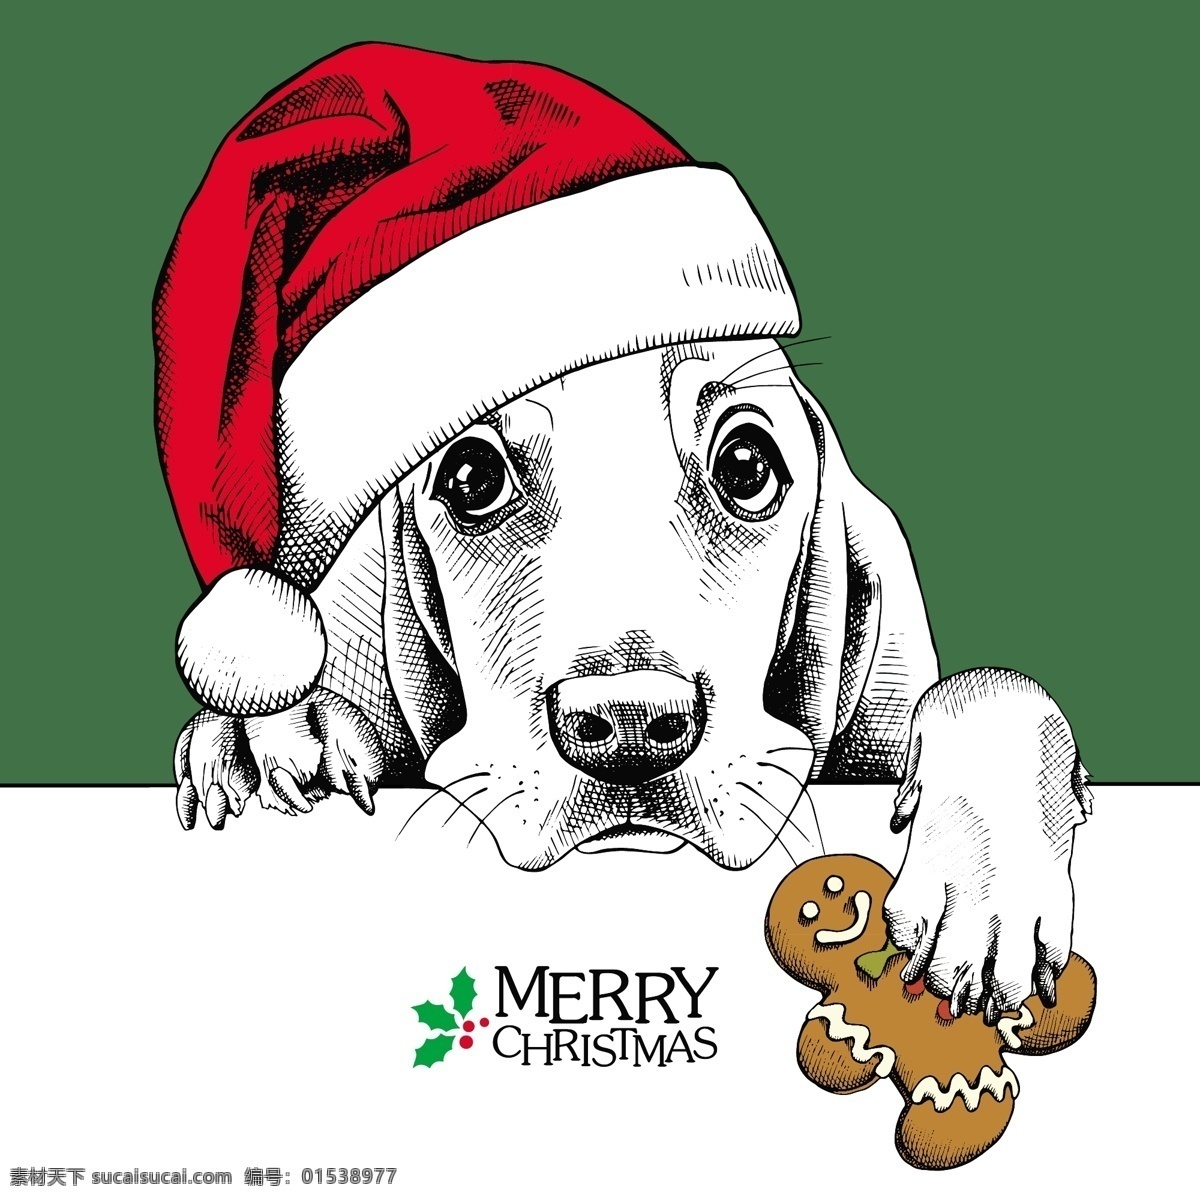 狗 狗头 可爱 动物 圣诞节 海报 矢量 绿色背景 卡通 圣诞节卡片 插画 铅笔画 黑白 红色 眼镜 圆圈